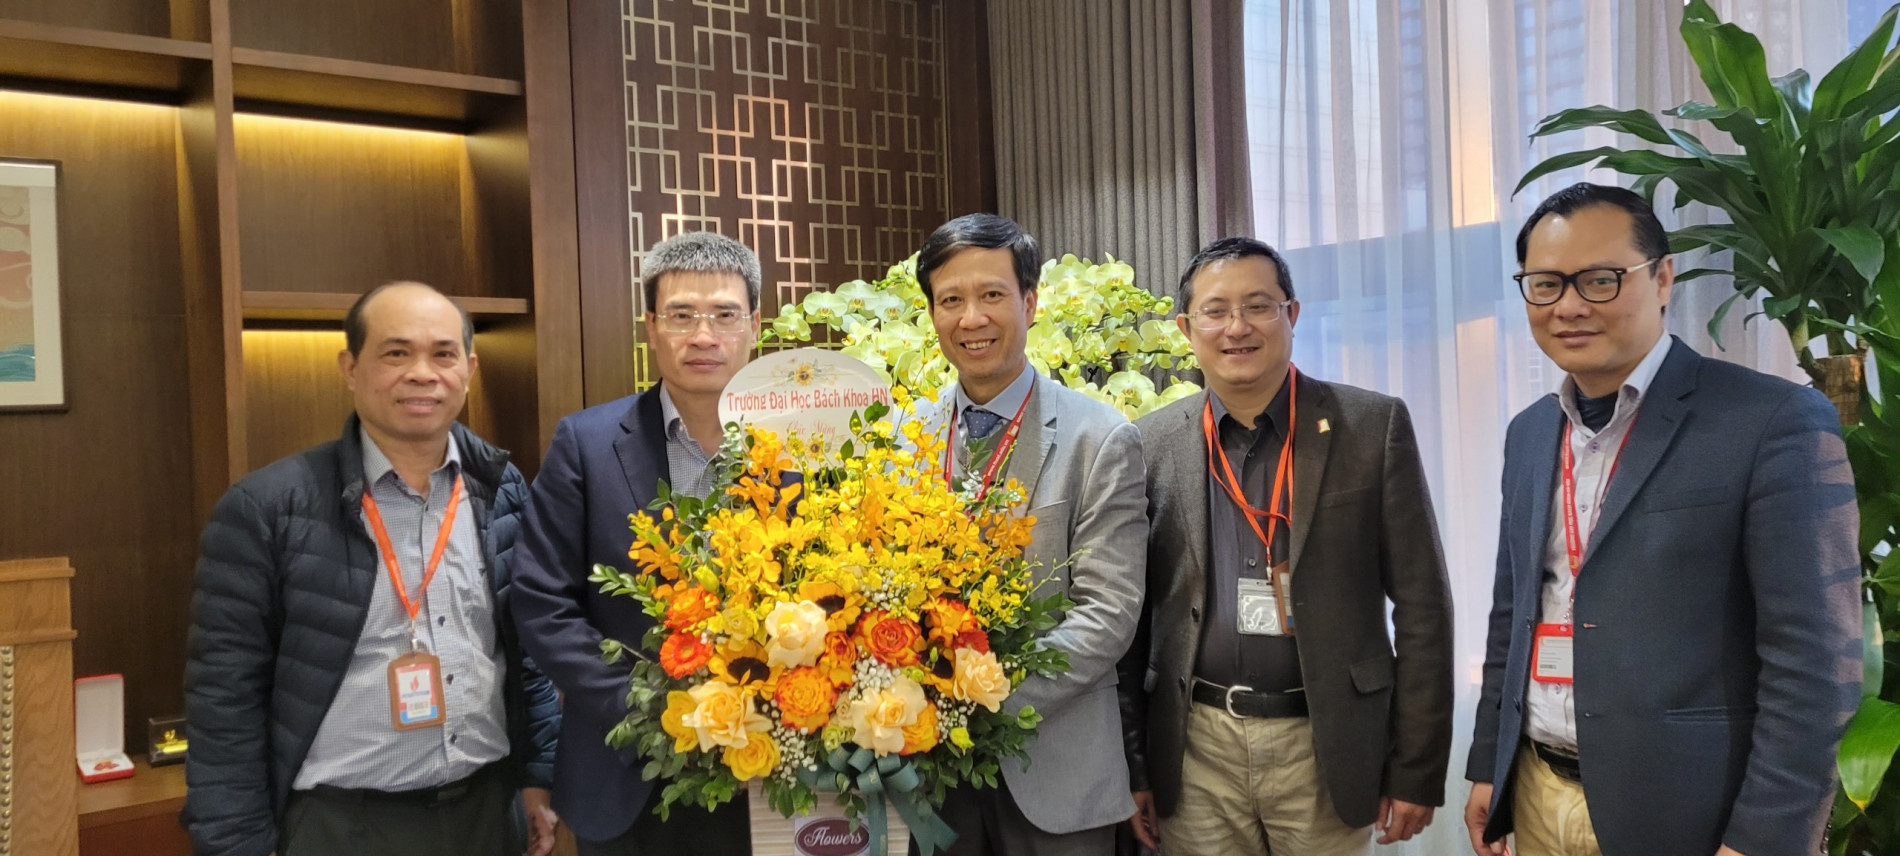 Hội đồng Trường - Đại học Bách khoa Hà Nội chúc mừng Ông Dương Mạnh Sơn (thứ hai từ trái sang) nhận quyết định vị trí mới